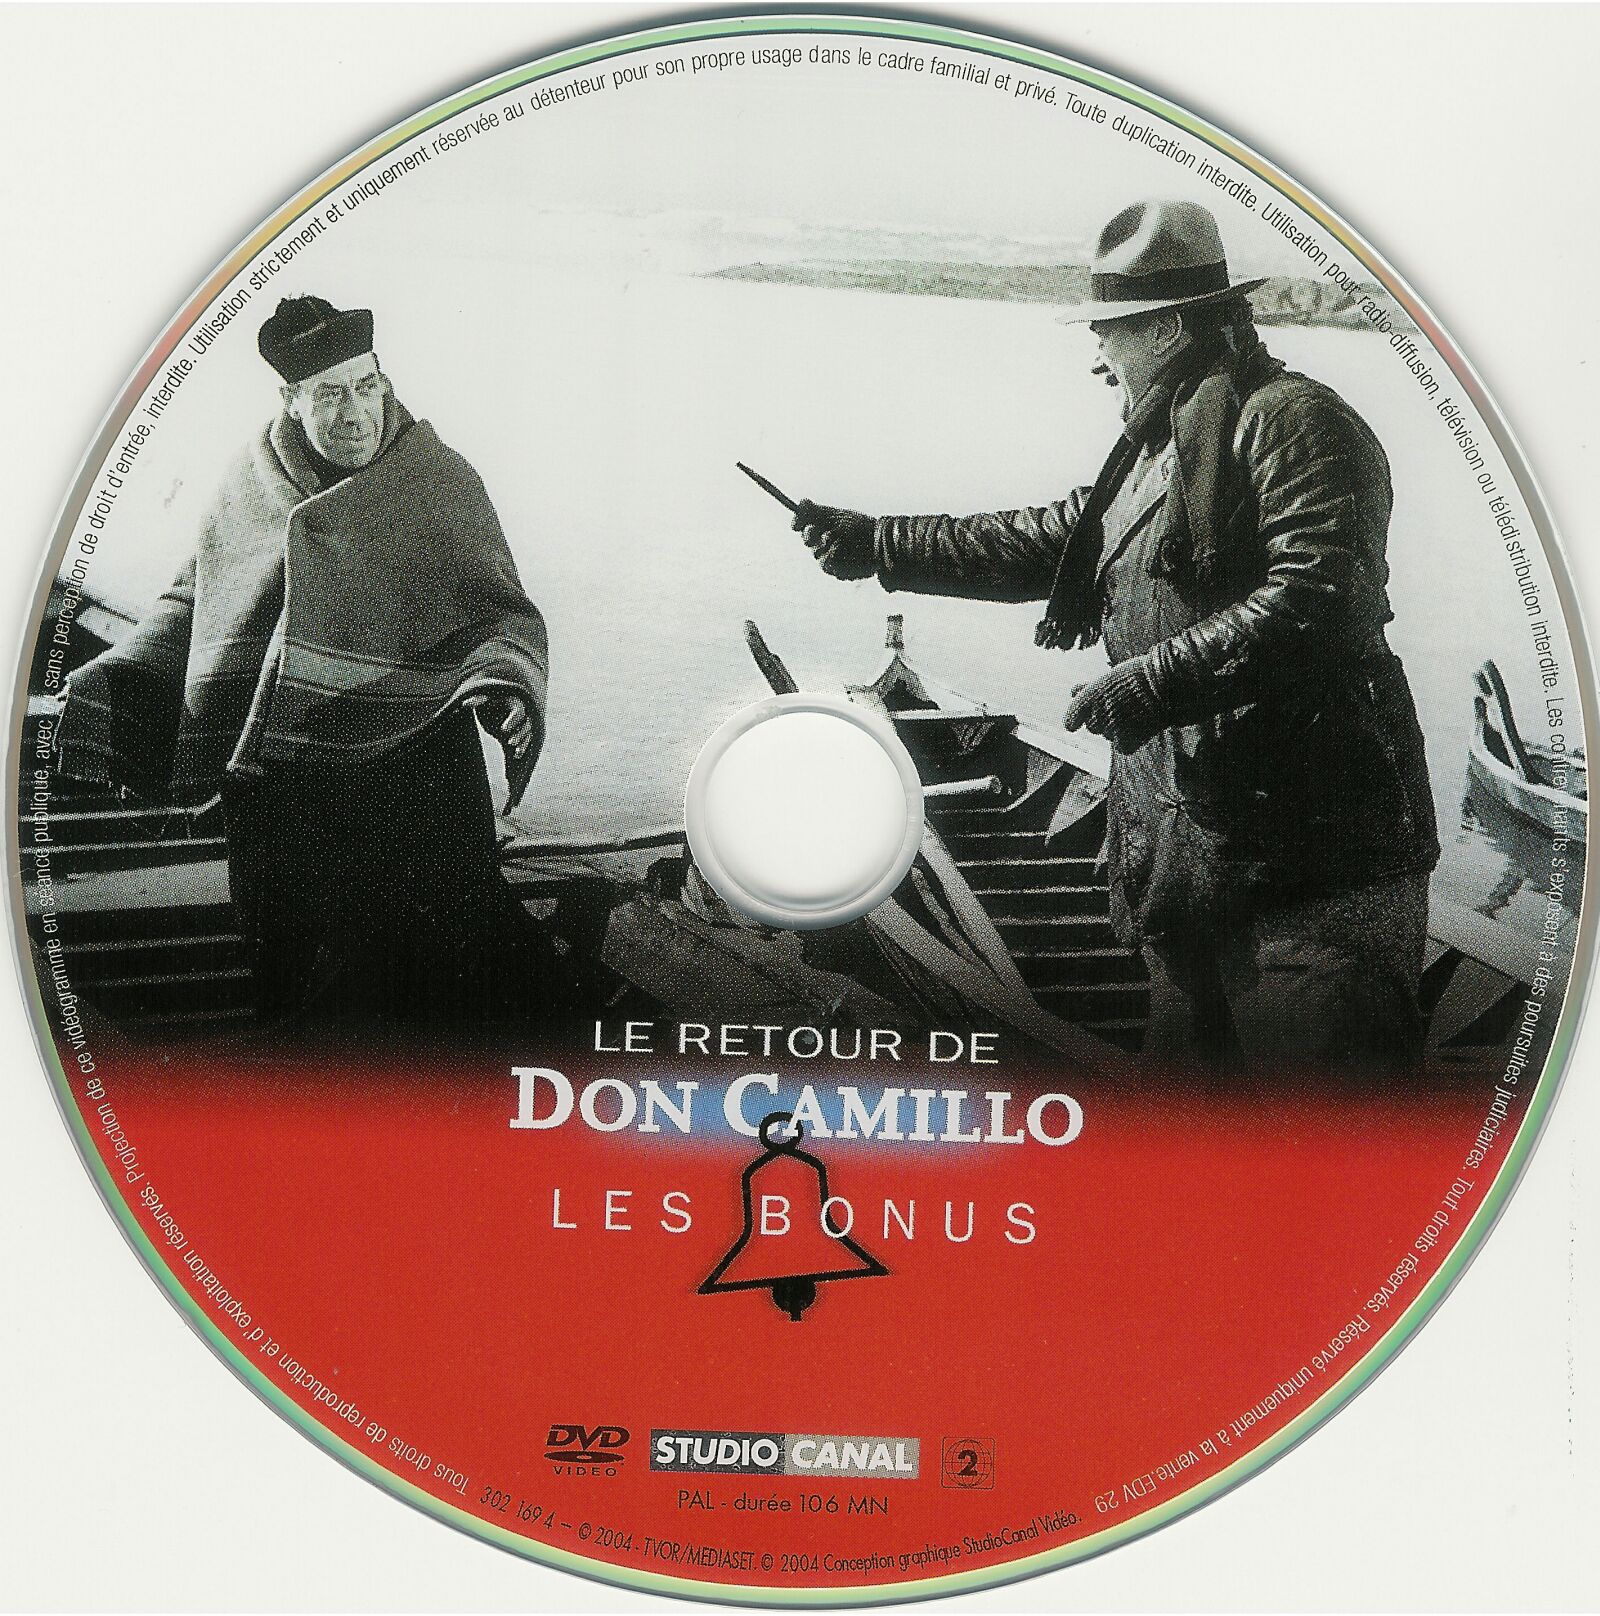 Don Camillo - Le retour de Don Camillo (Bonus)